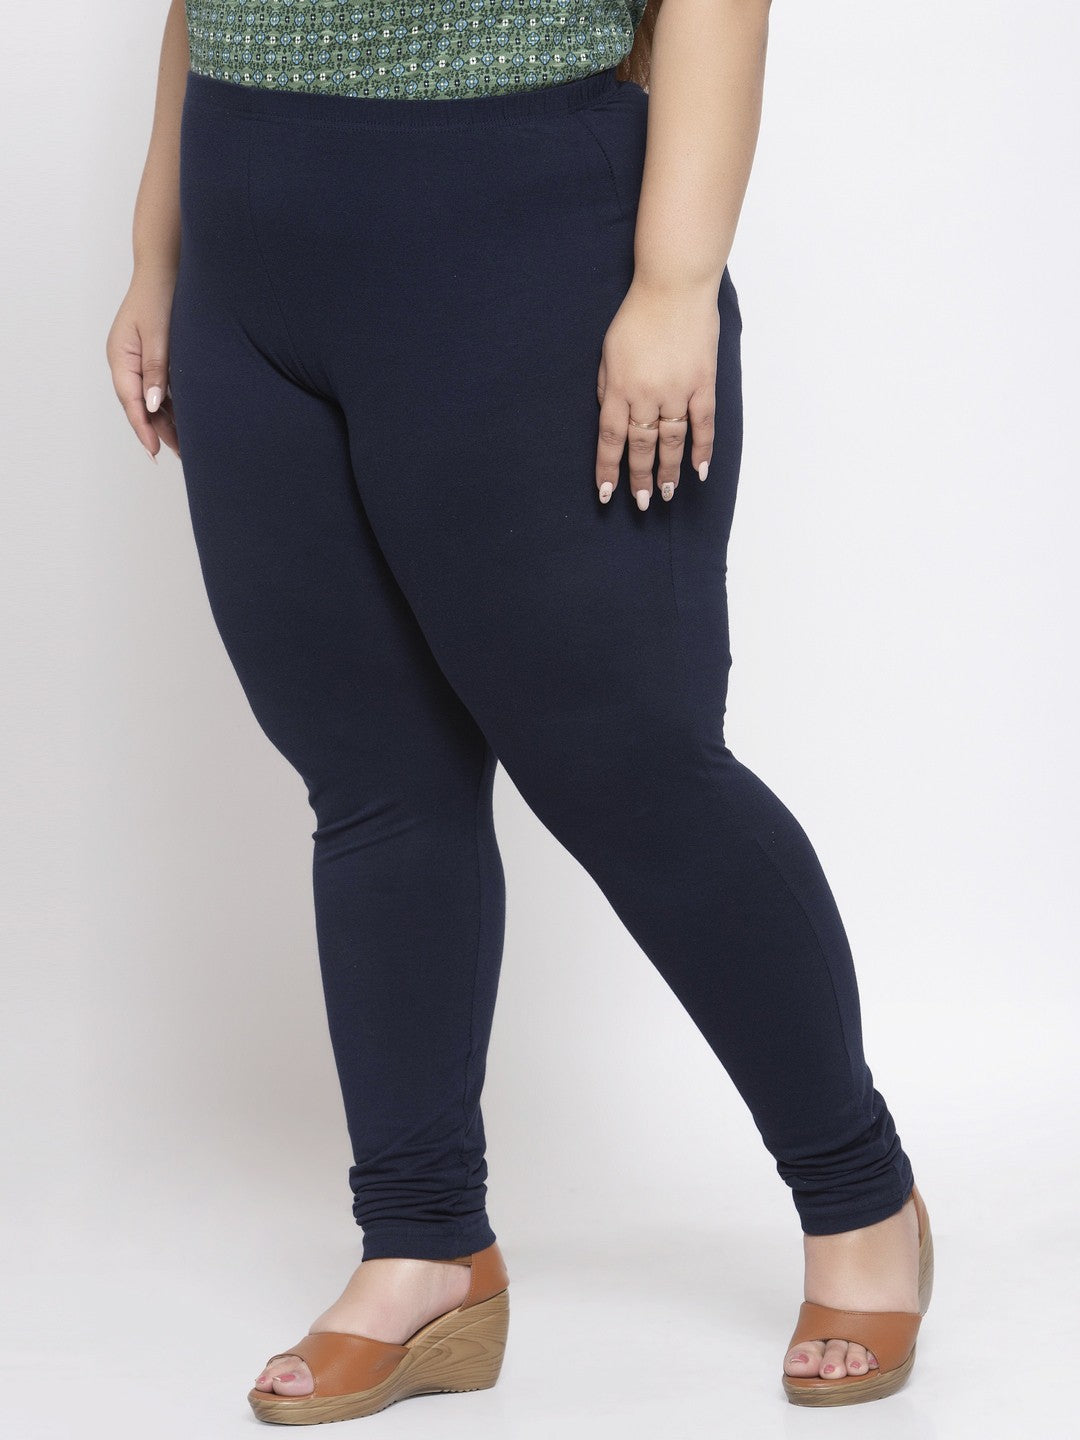 Sofra Women's Plus Sized Full Length Leggings-Navy Blue at Amazon Women's  Clothing store